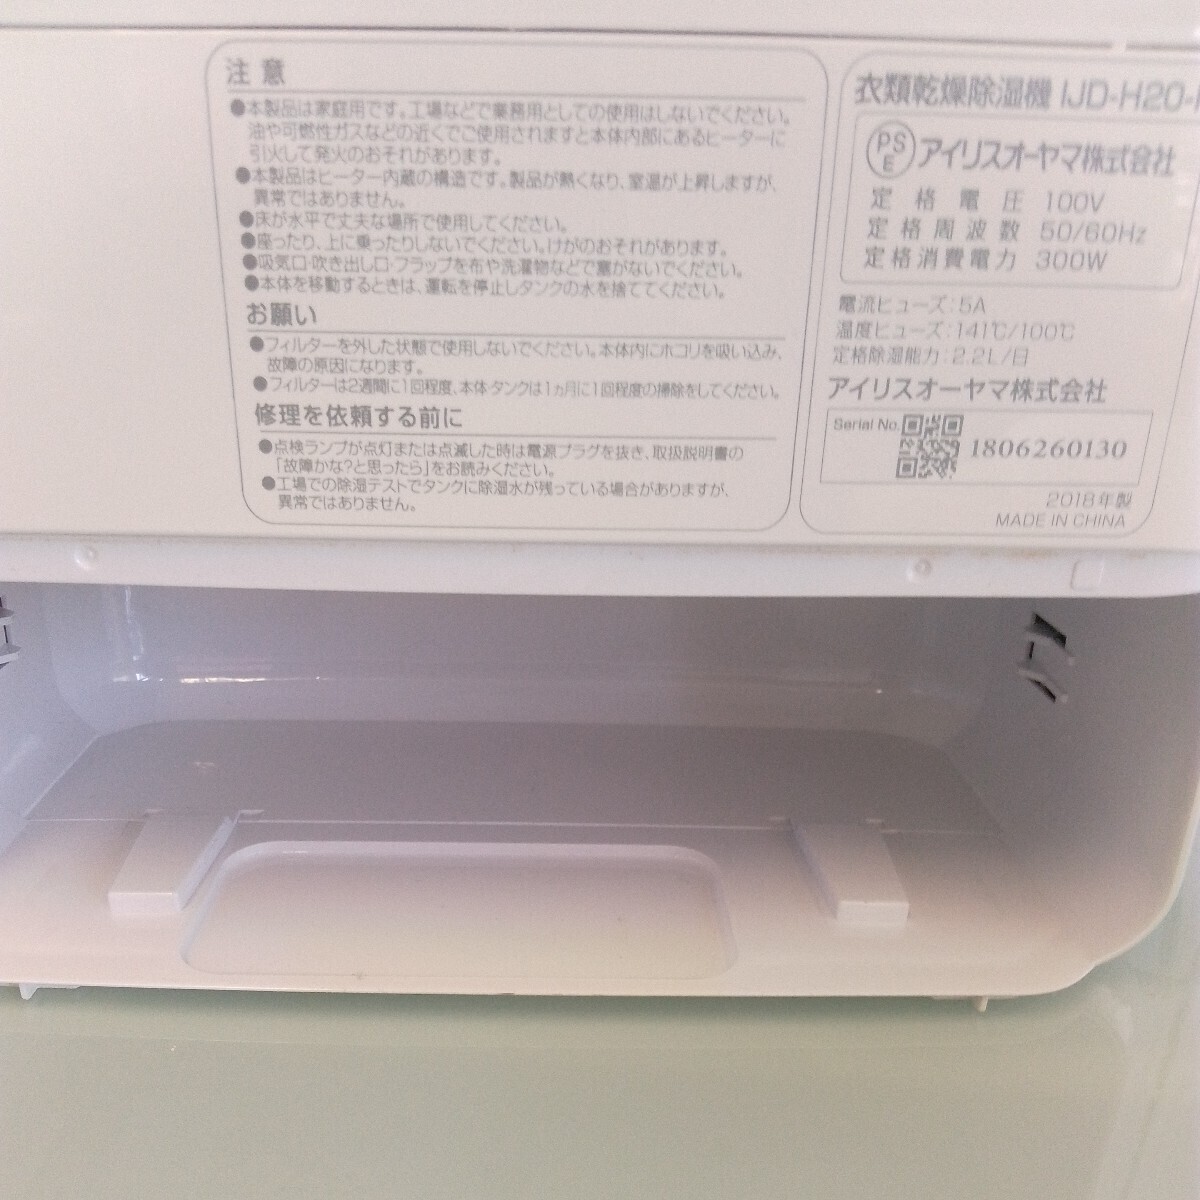  Iris o-yamaIJD-H20-Pte can to тип 2.2 литров осушение розовый W×H×D 165×510×325mm вес 4.4kg 2018 год производства прекрасный товар 